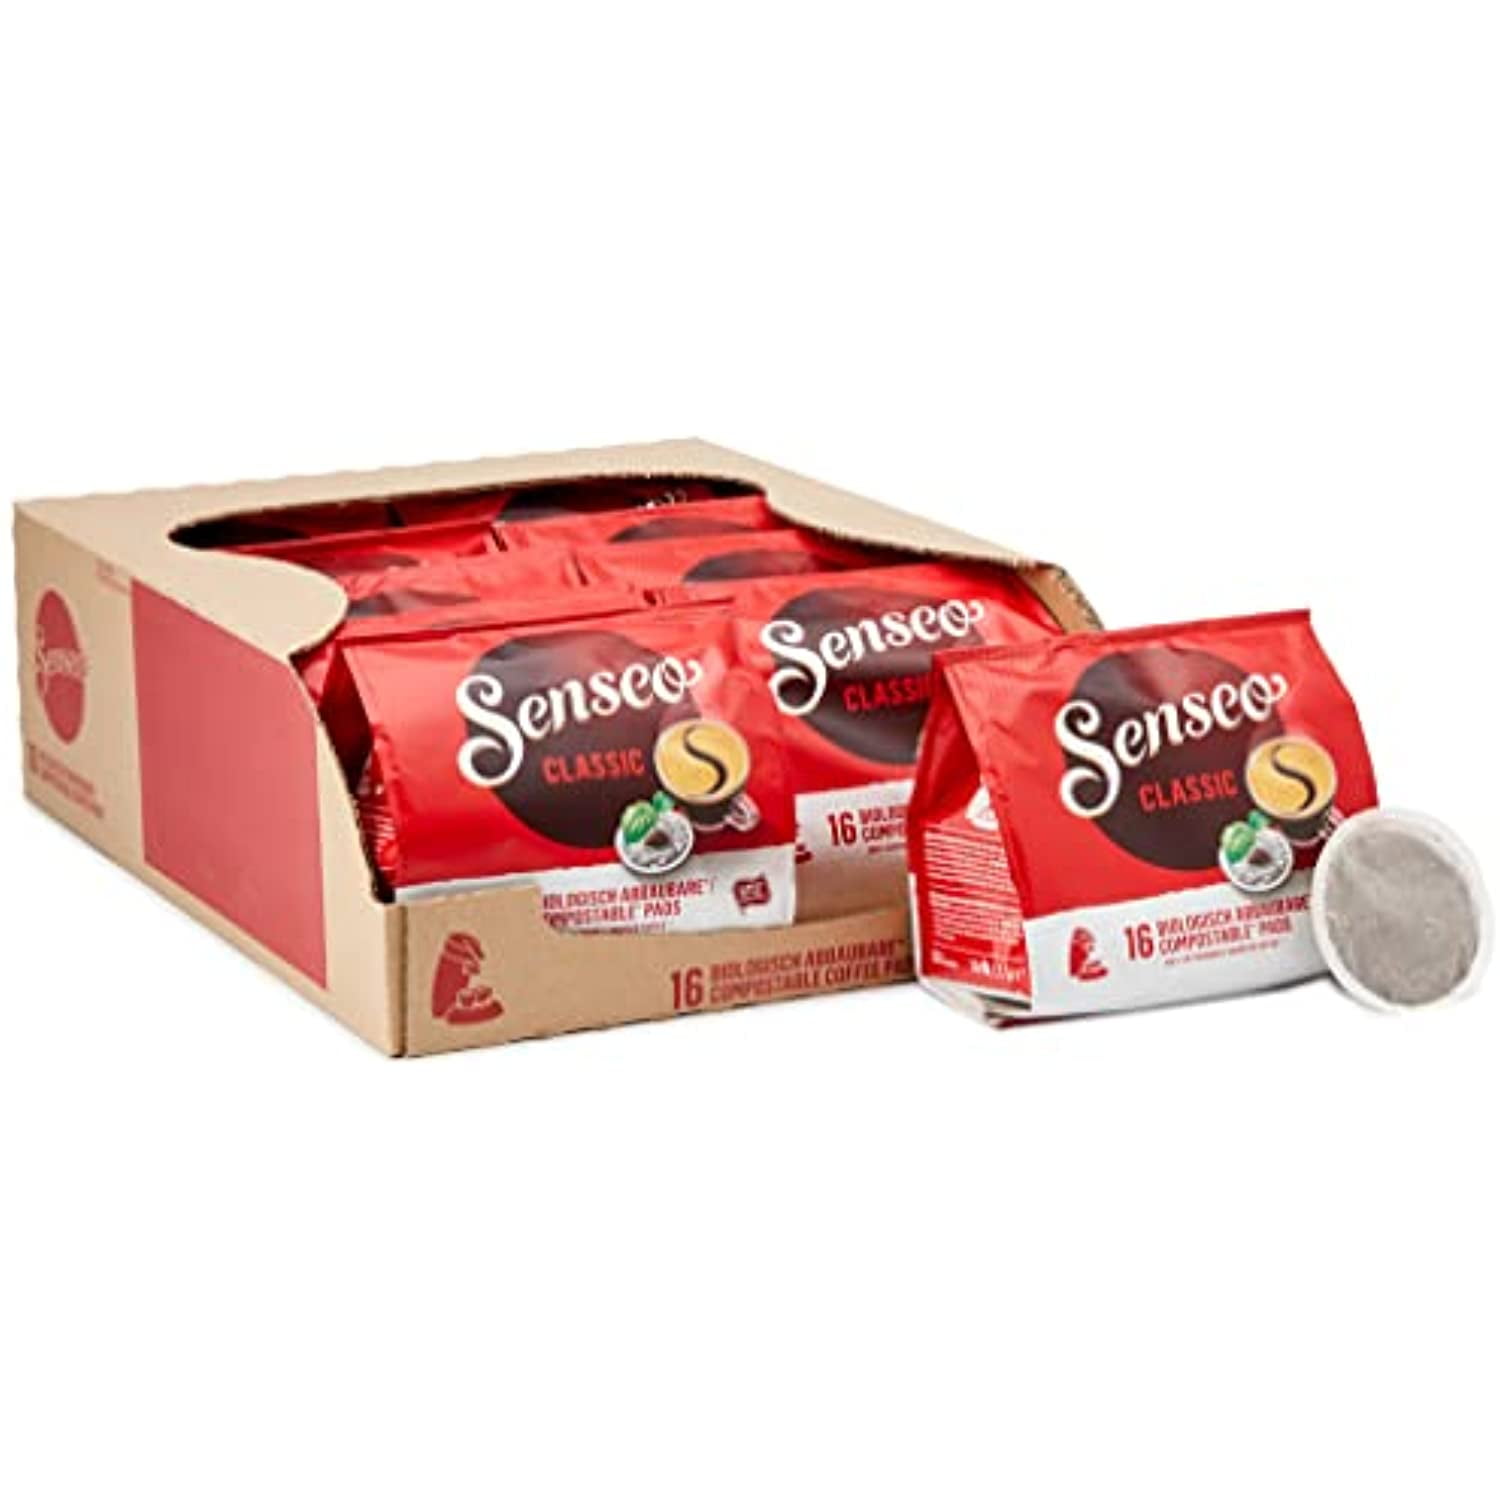 Café dosettes compatibles Senseo espresso classico Leader Price 250g sur